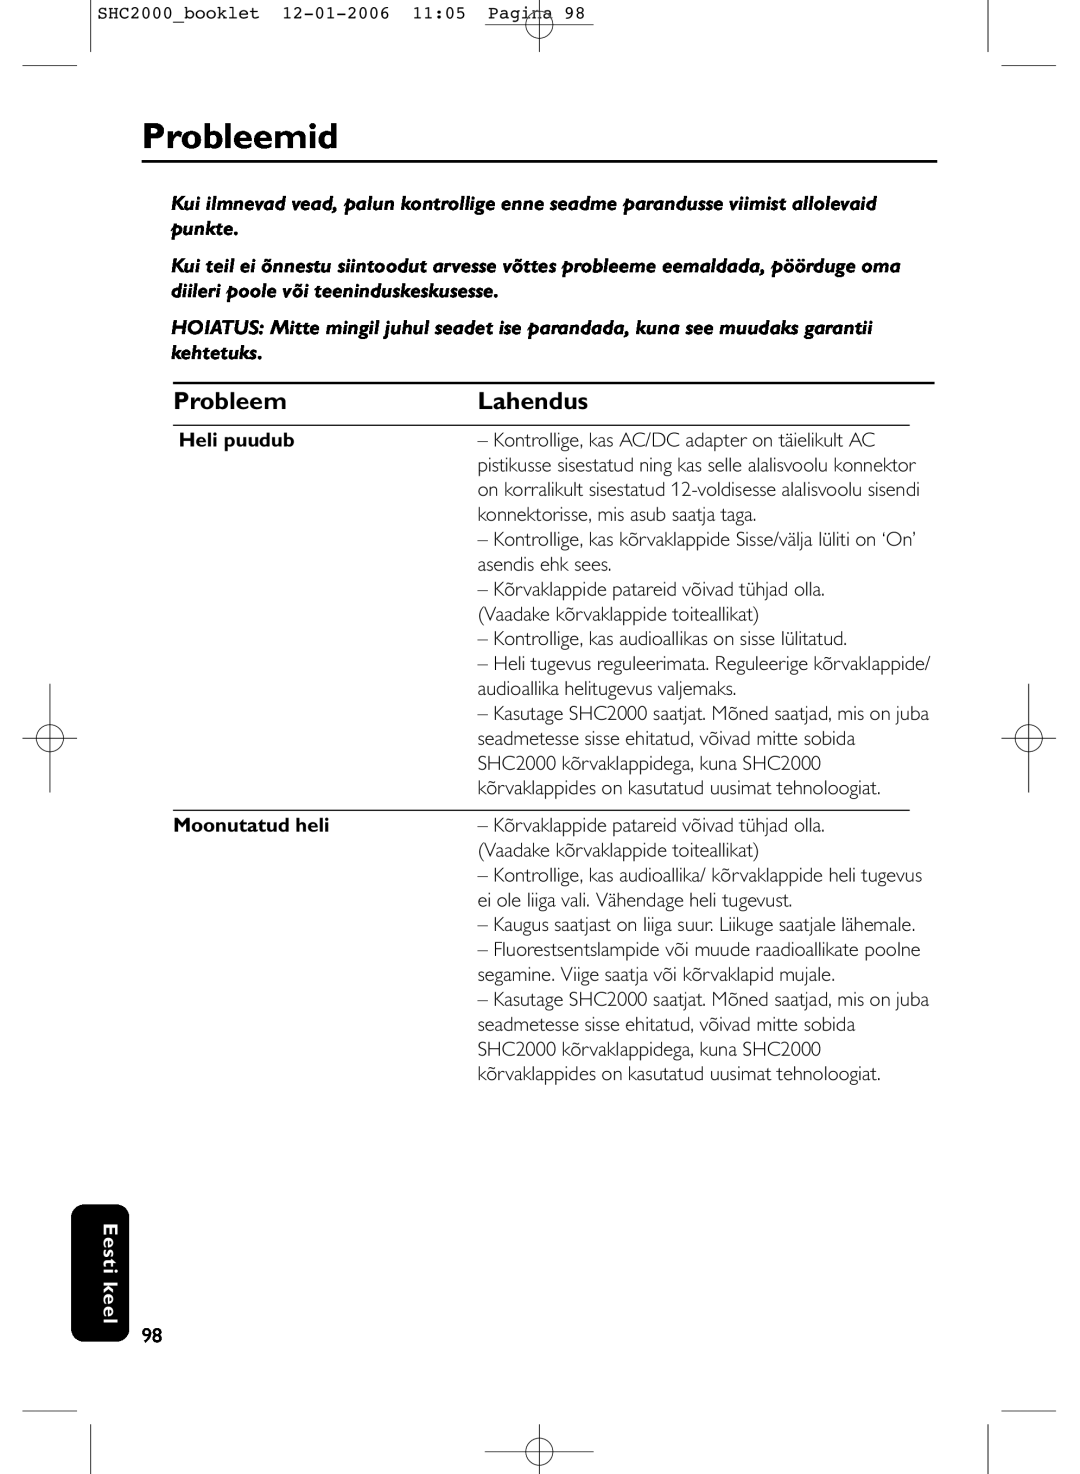 Philips SHC2000 manual Probleemid, Lahendus, Heli puudub, Moonutatud heli, Eesti keel 